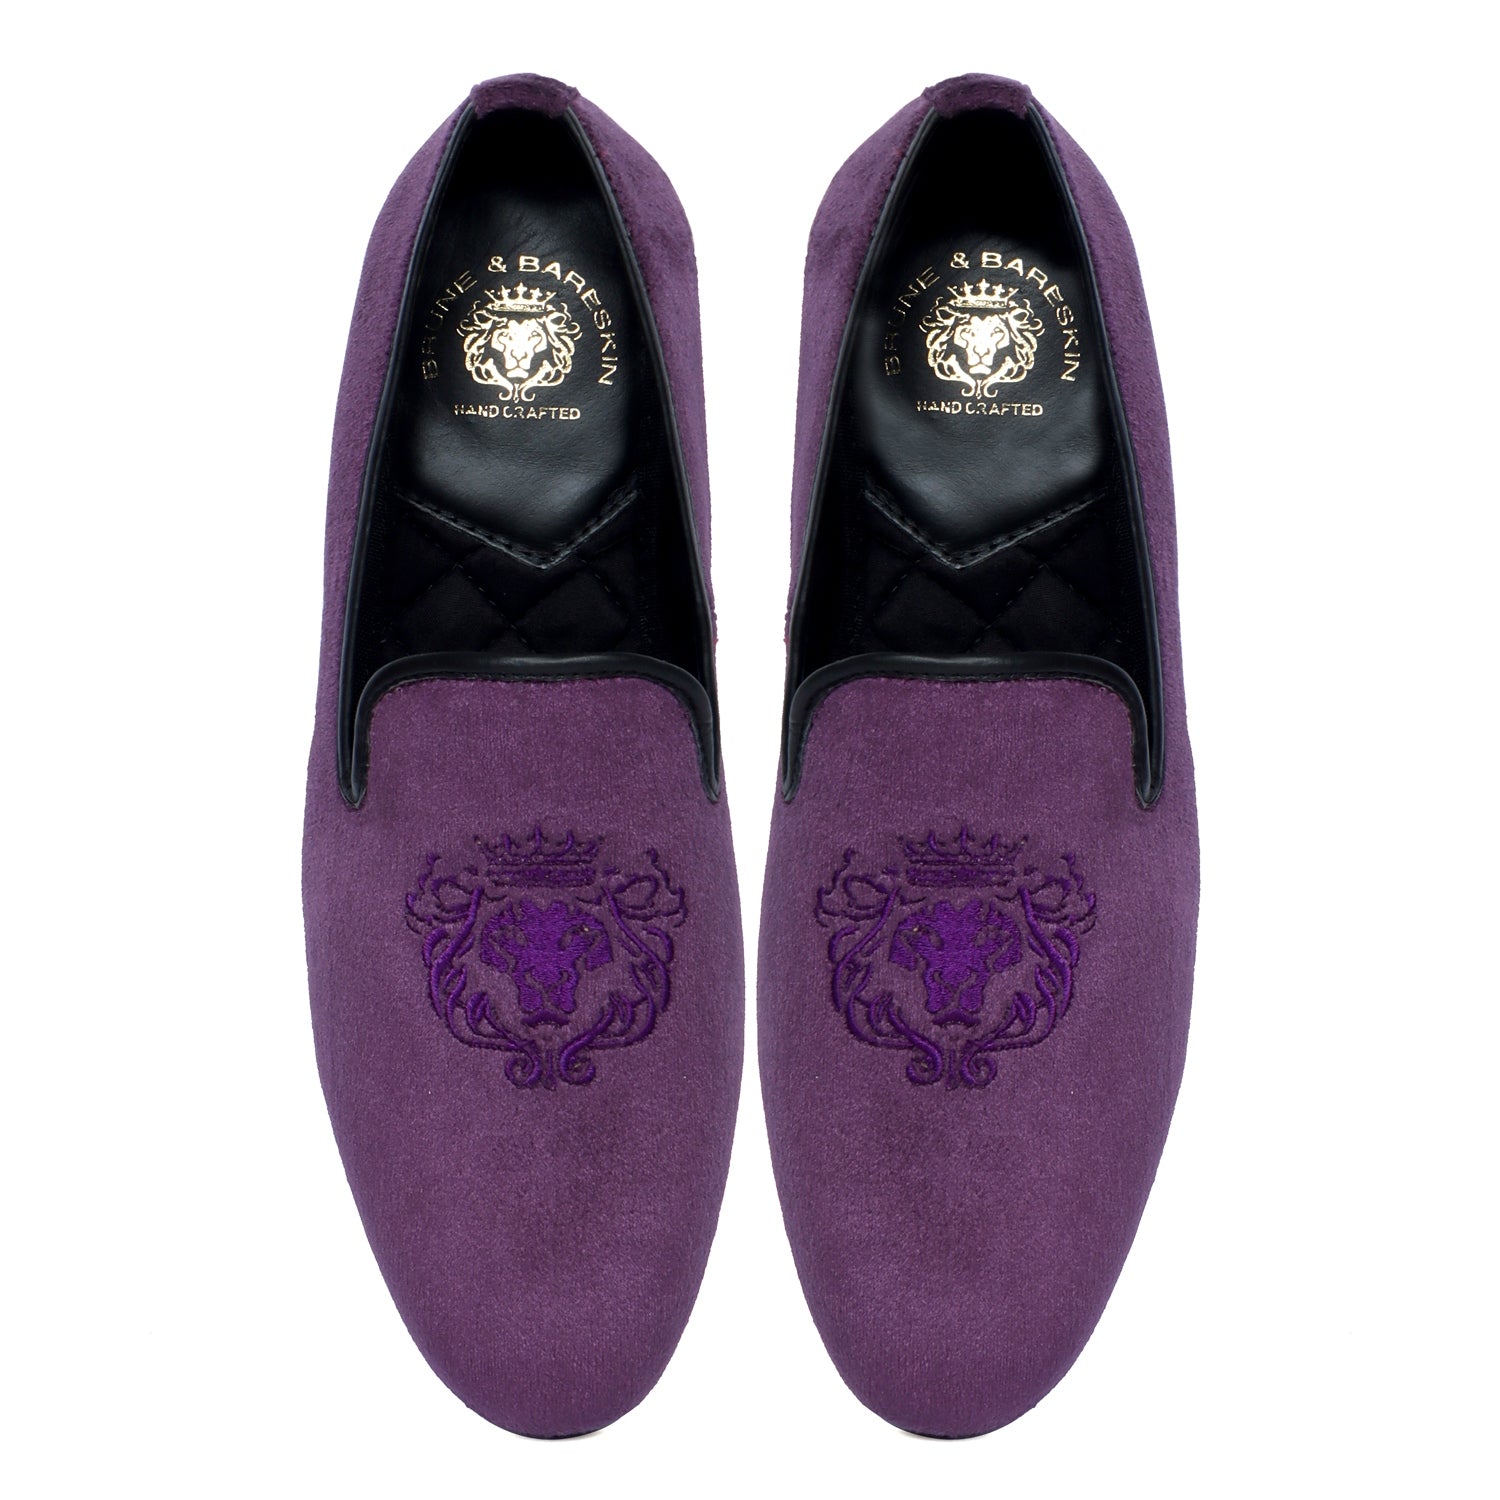 Men's Lion King Embroidery Purple Italian Velvet Slip-On Shoes By Brune & Bareskin